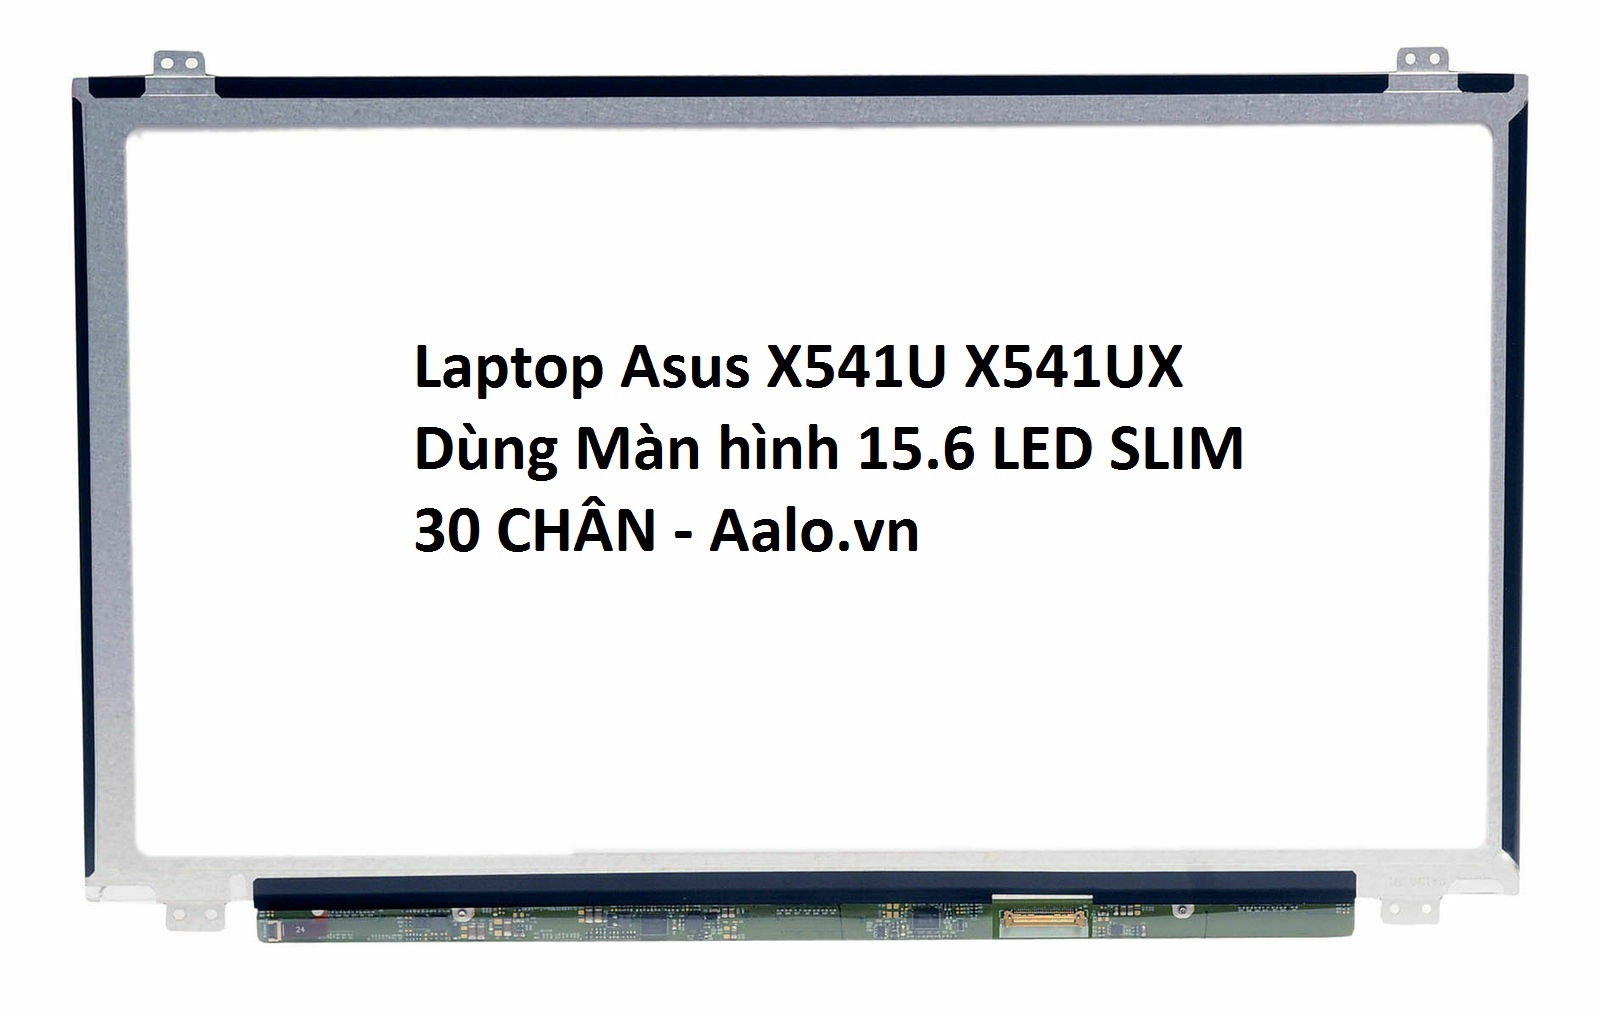 Màn hình laptop Asus X541U X541UX - Aalo.vn